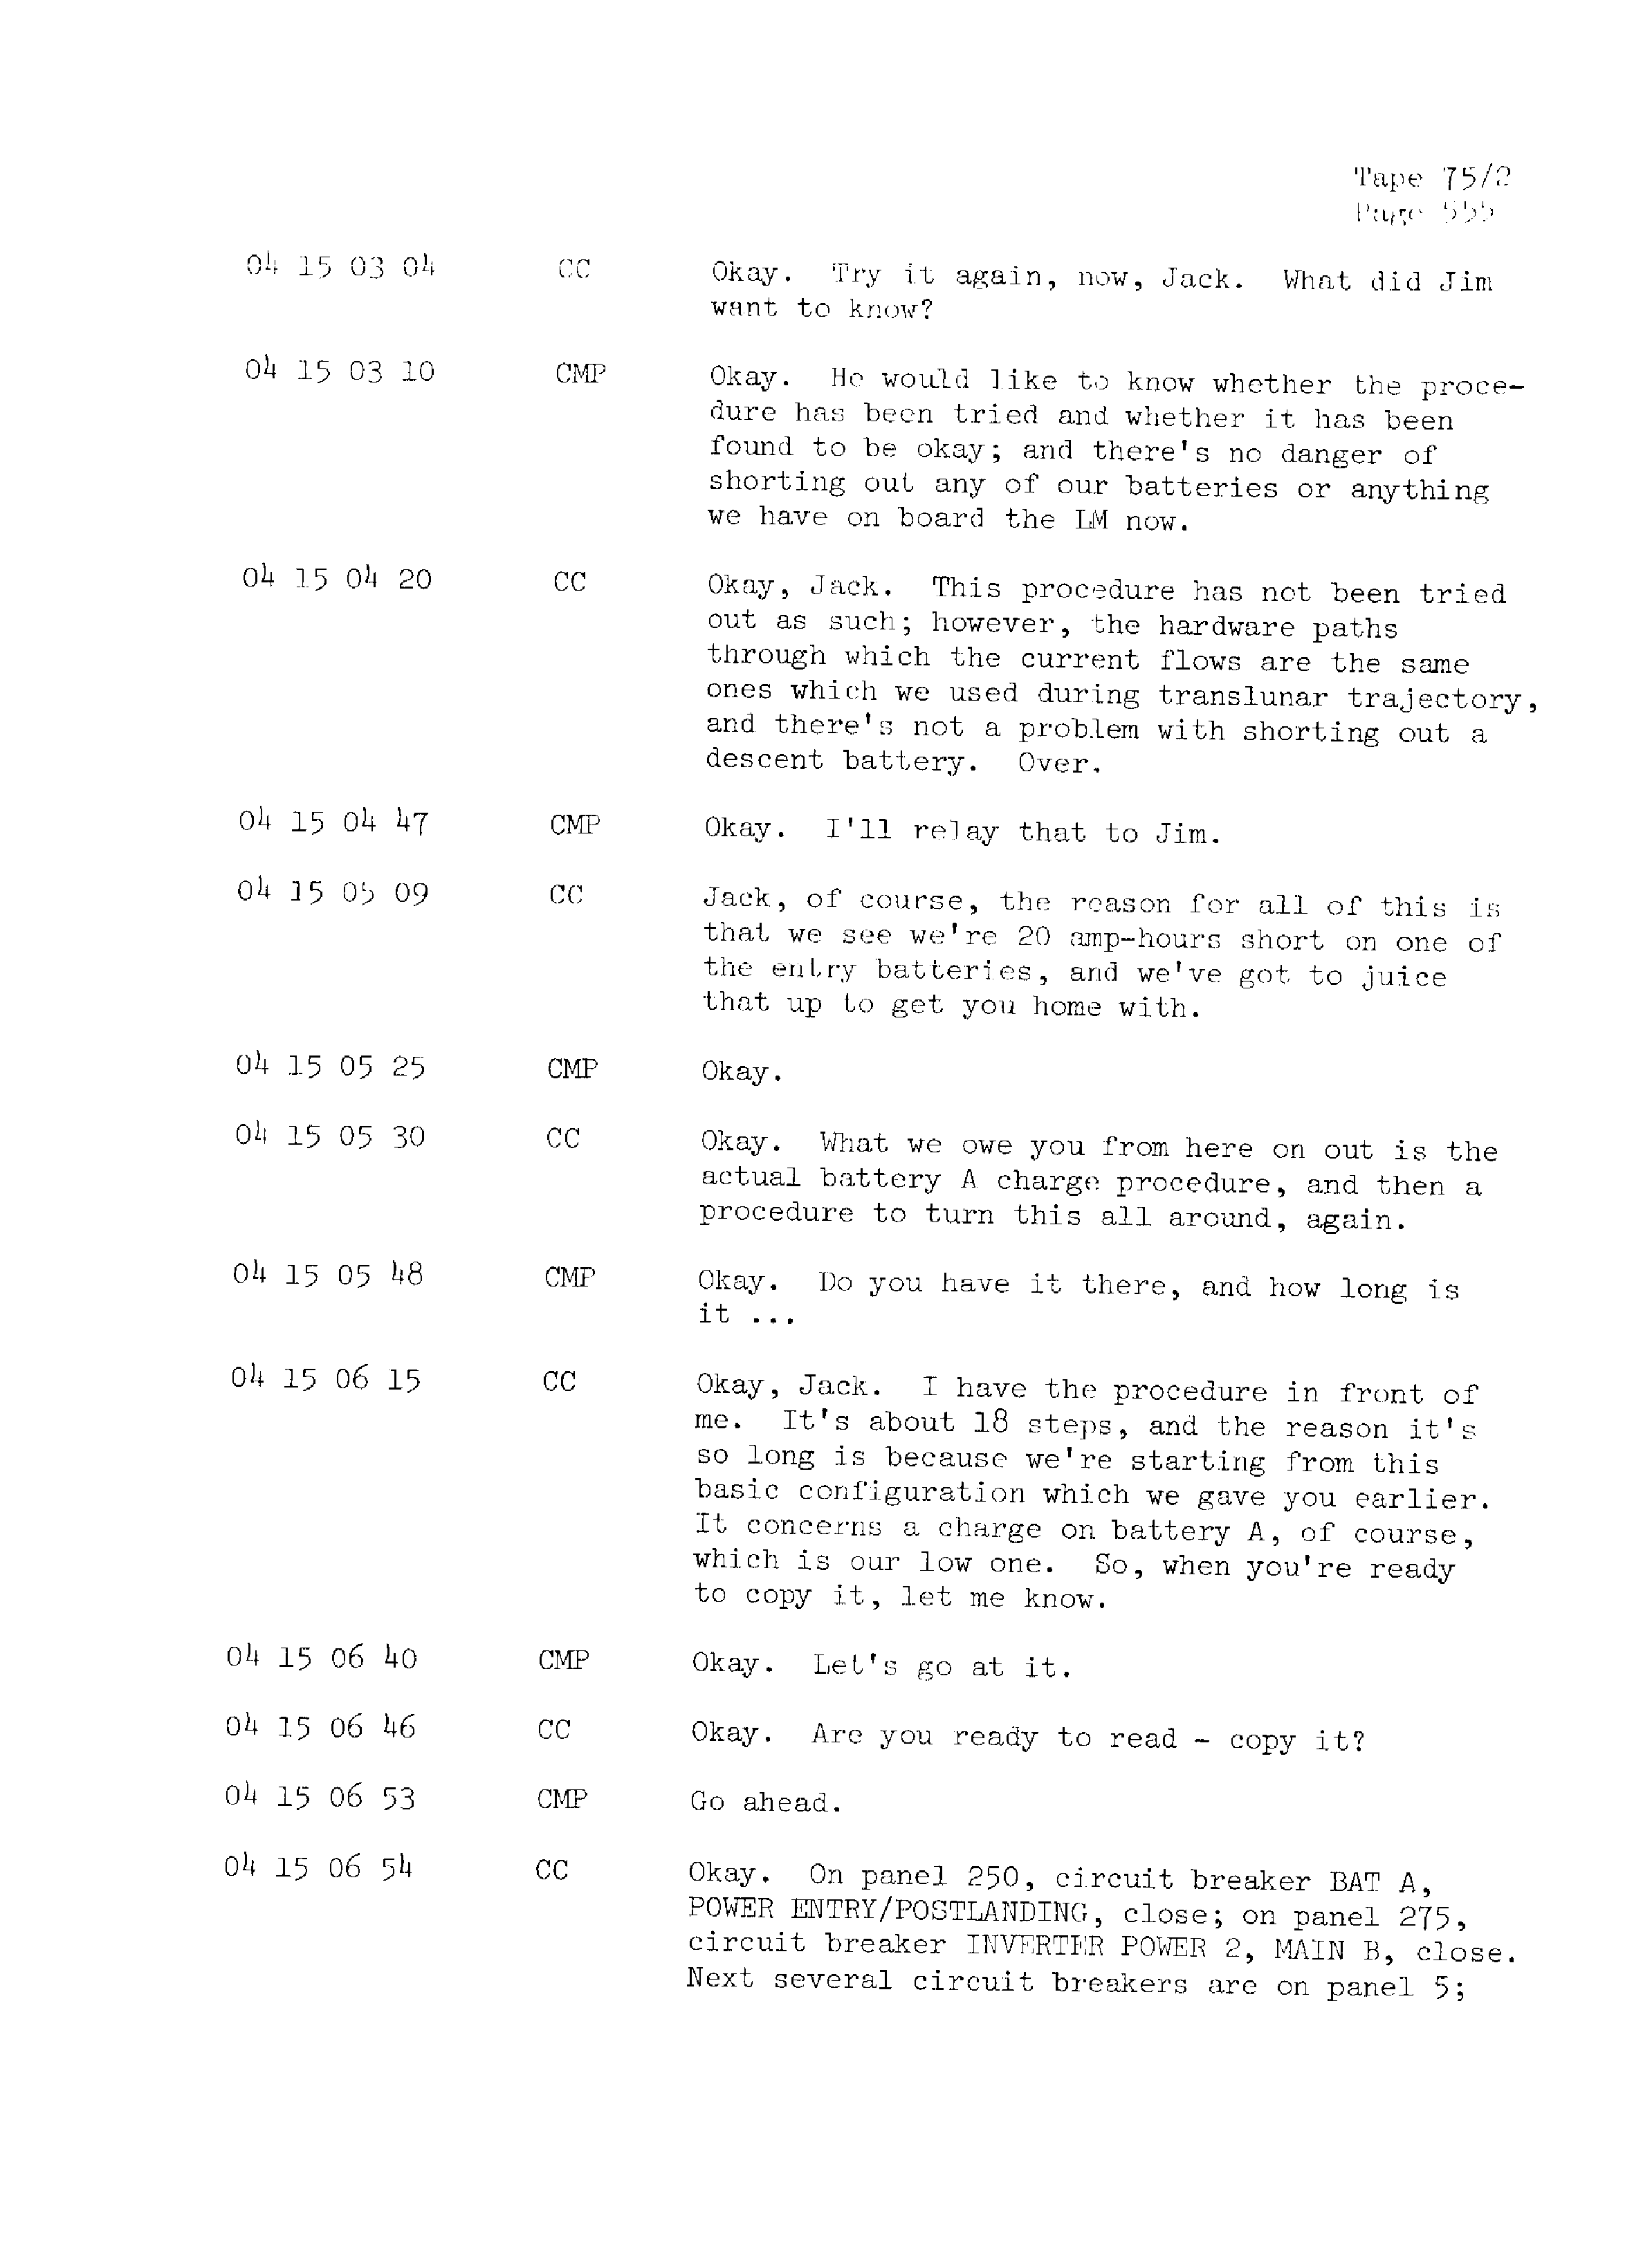 Page 562 of Apollo 13’s original transcript